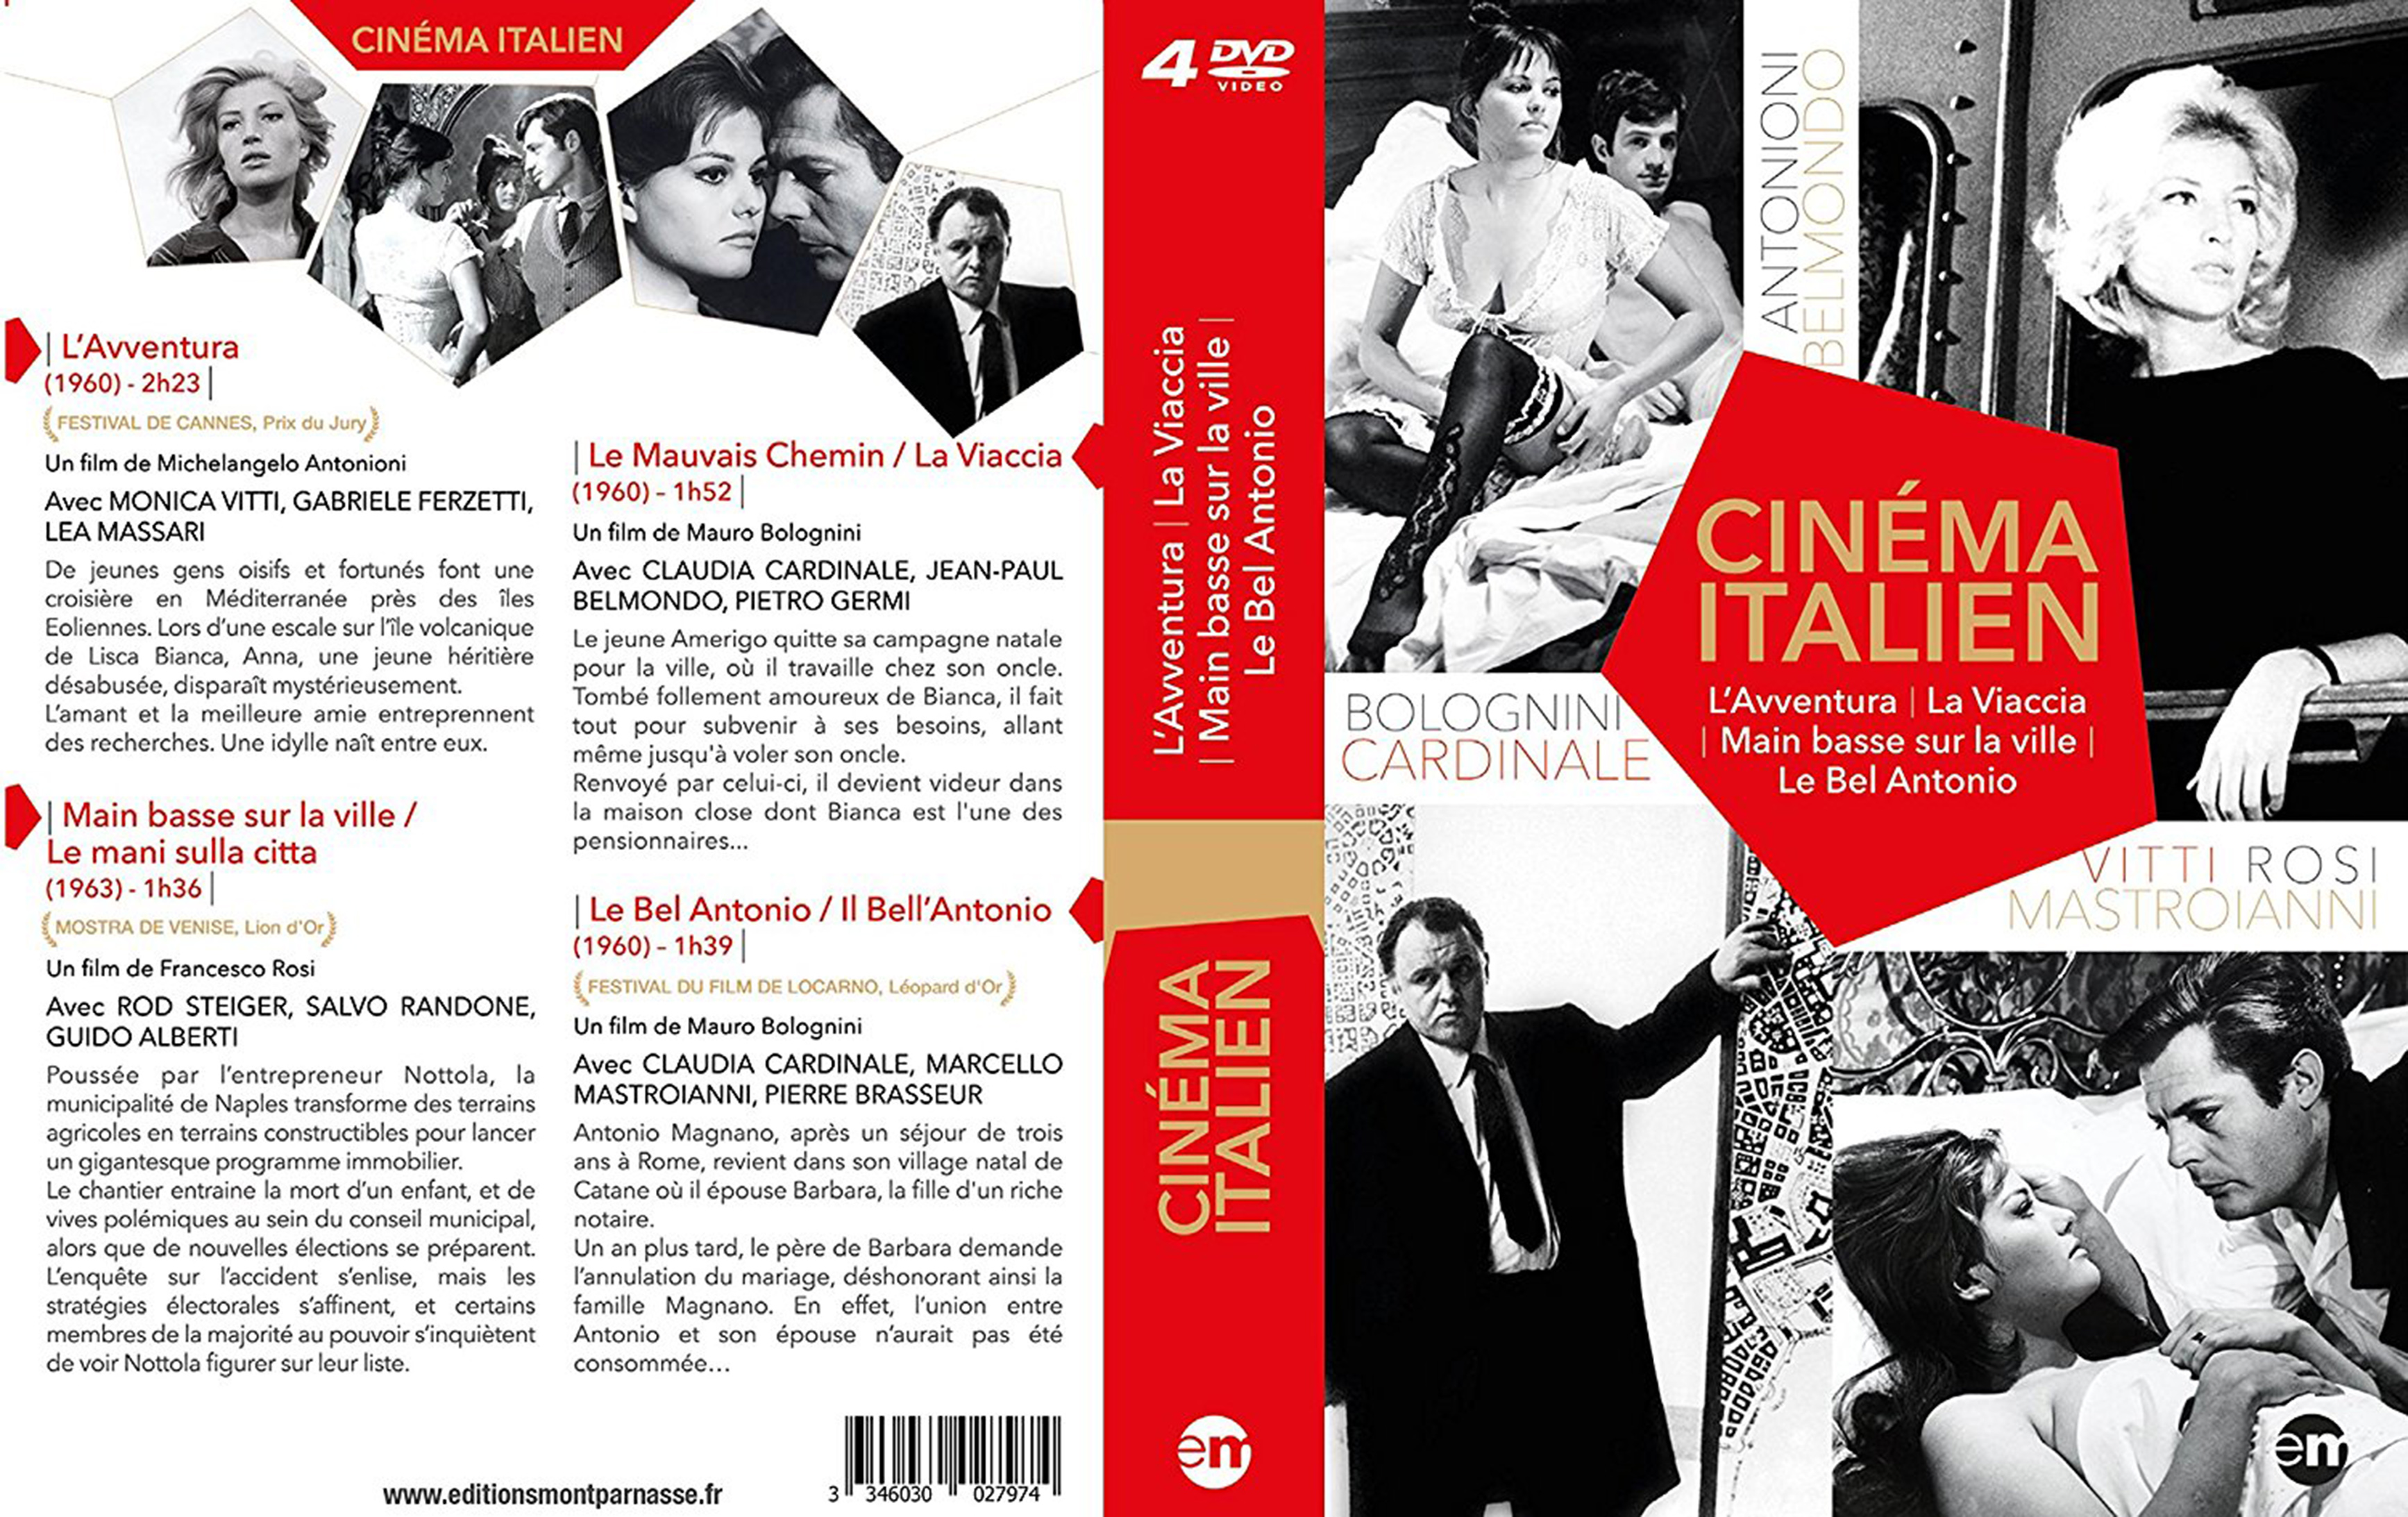 Jaquette DVD Cinema Italien Le Bel Antonio, La Viaccia, Main basse sur la ville, L